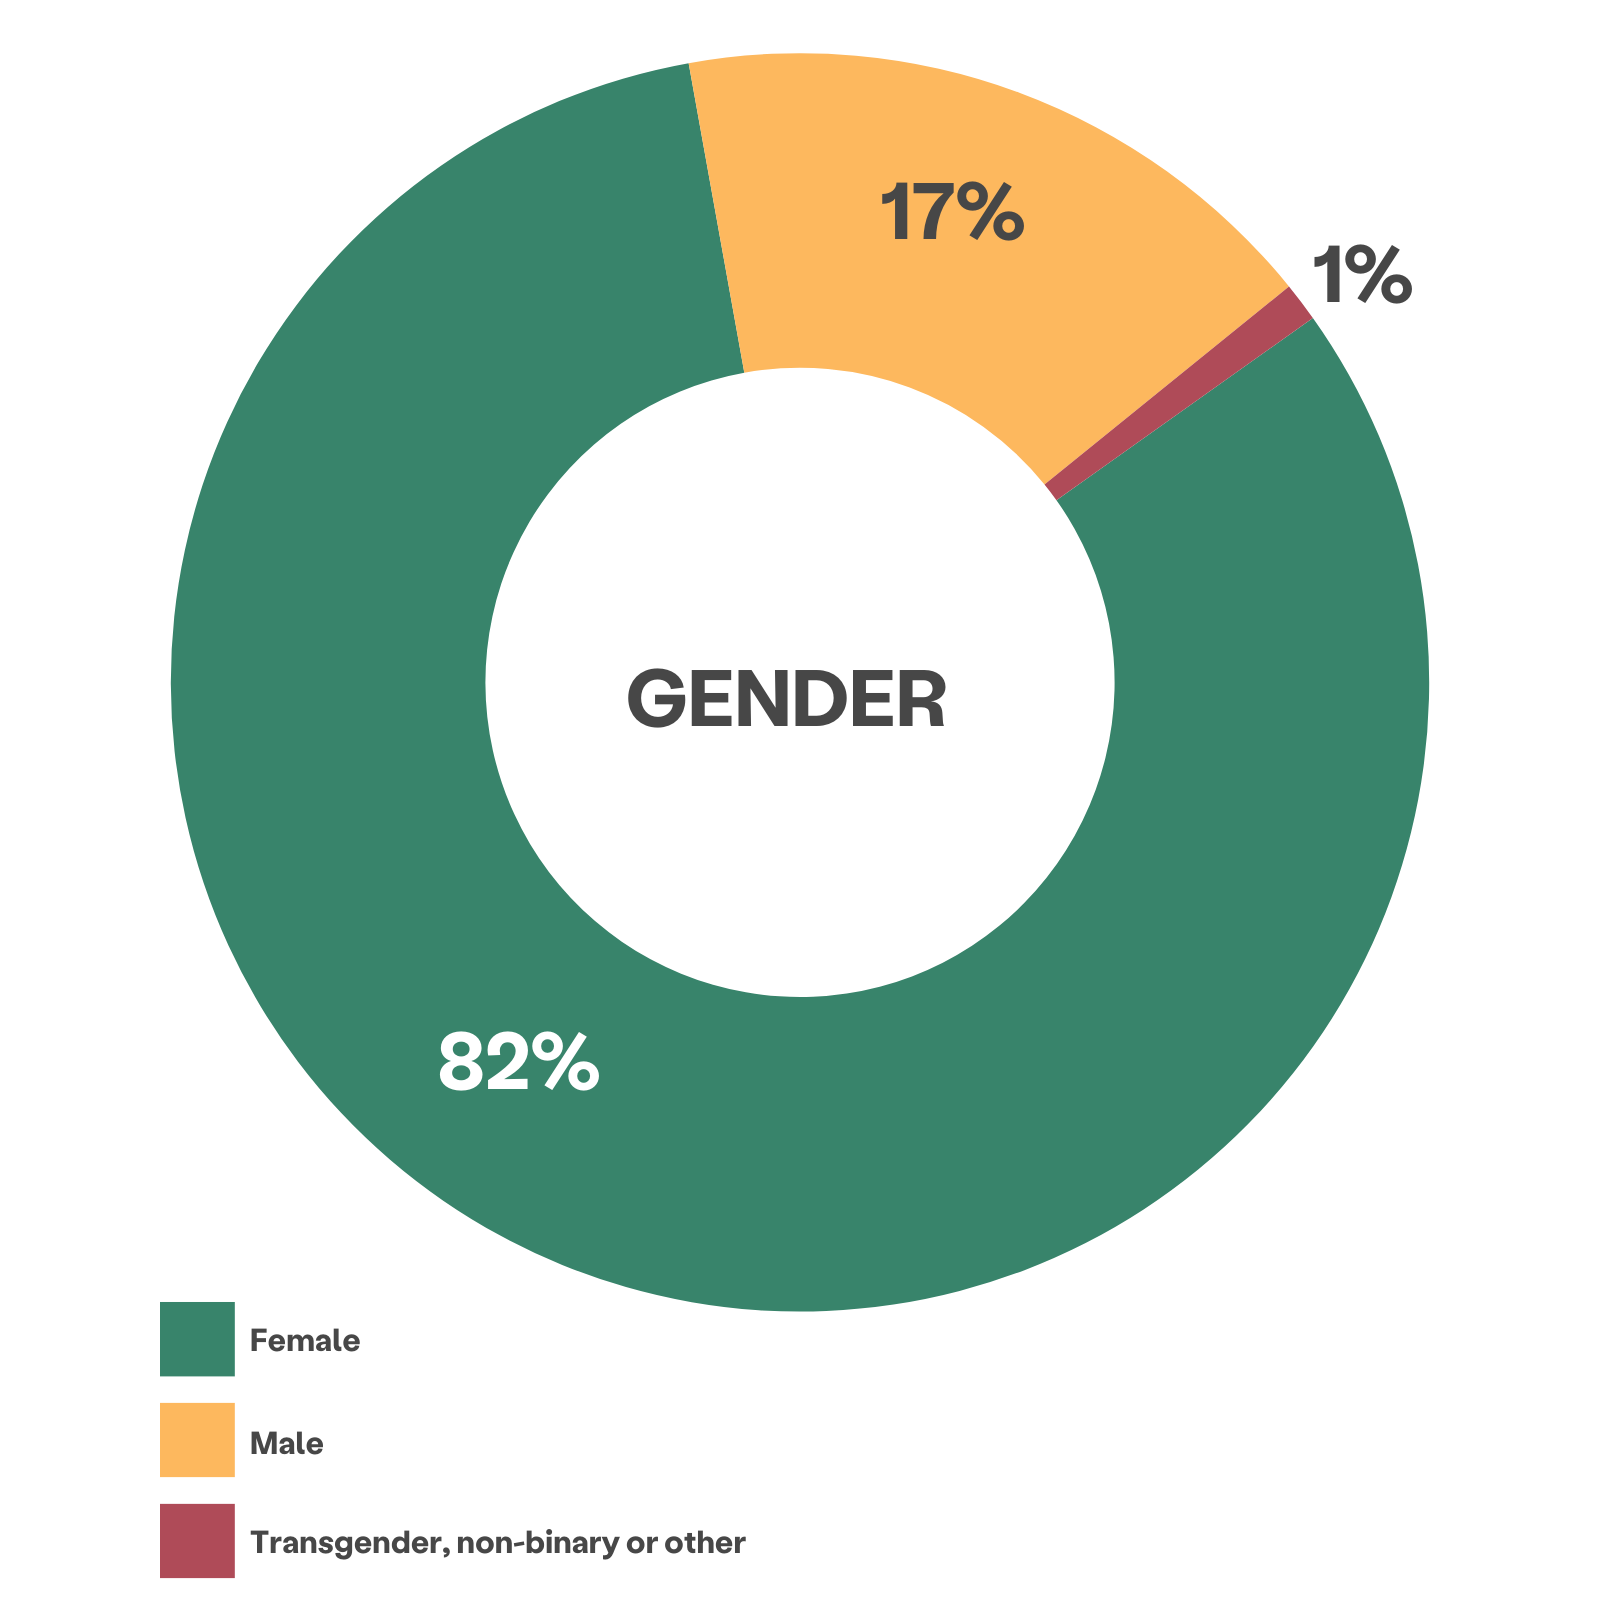 多色轮盘图显示客户性别：82% 女性，17% 男性，1% 跨性别者、非二元性别者或其他